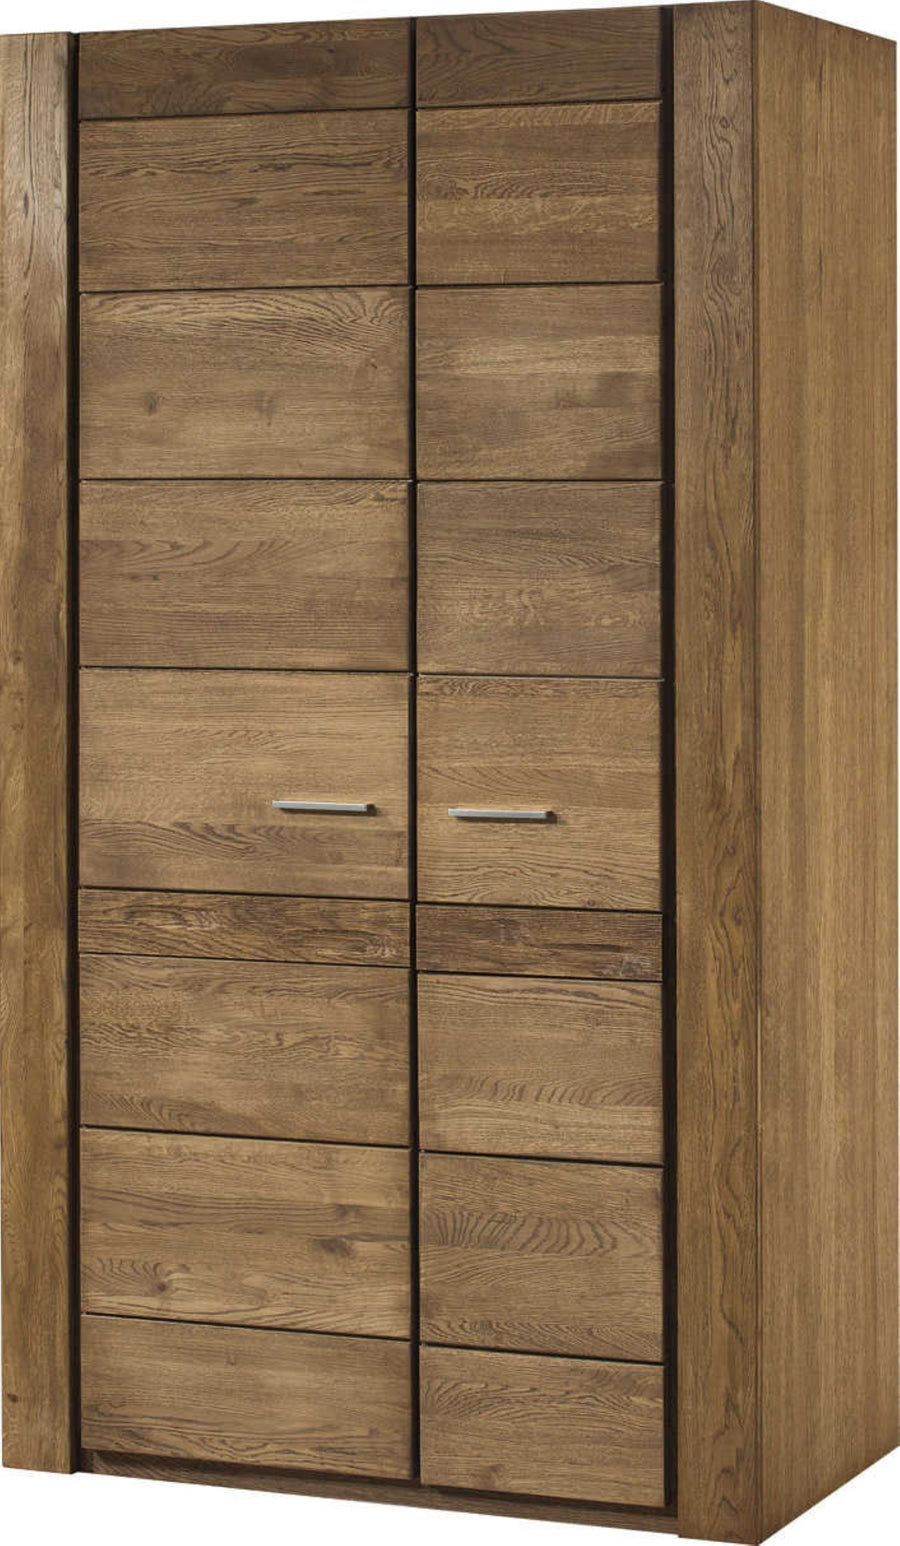 VESKOR Mueble armario de madera maciza de roble de la colección Velvet. Mueble nórdico con un diseño moderno 